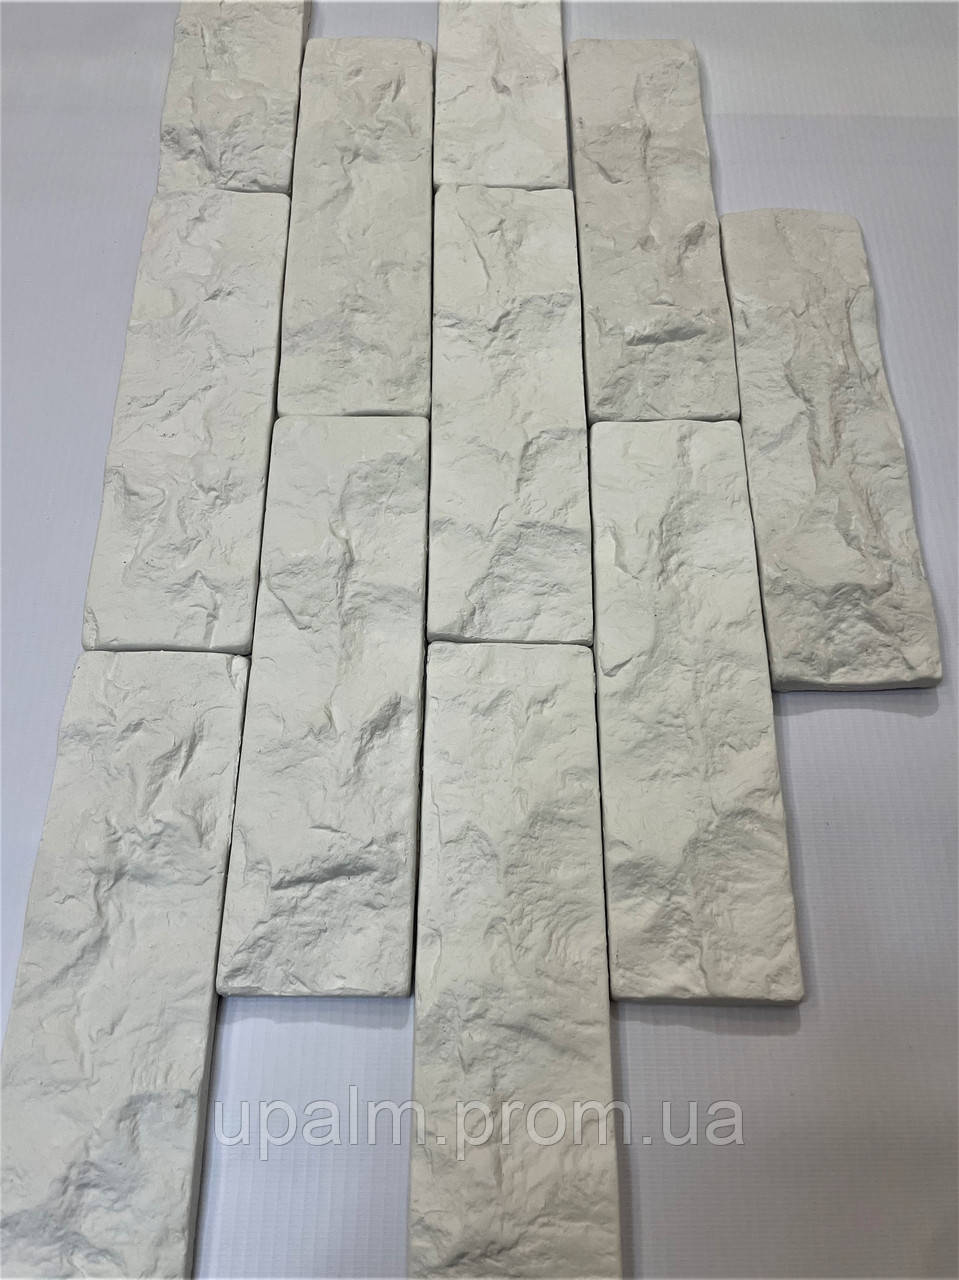 Декоративна гіпсова плитка Скеля 1 од (Колотий, Мармуровий, Брістоль) виробництва Upalm білого кольору.